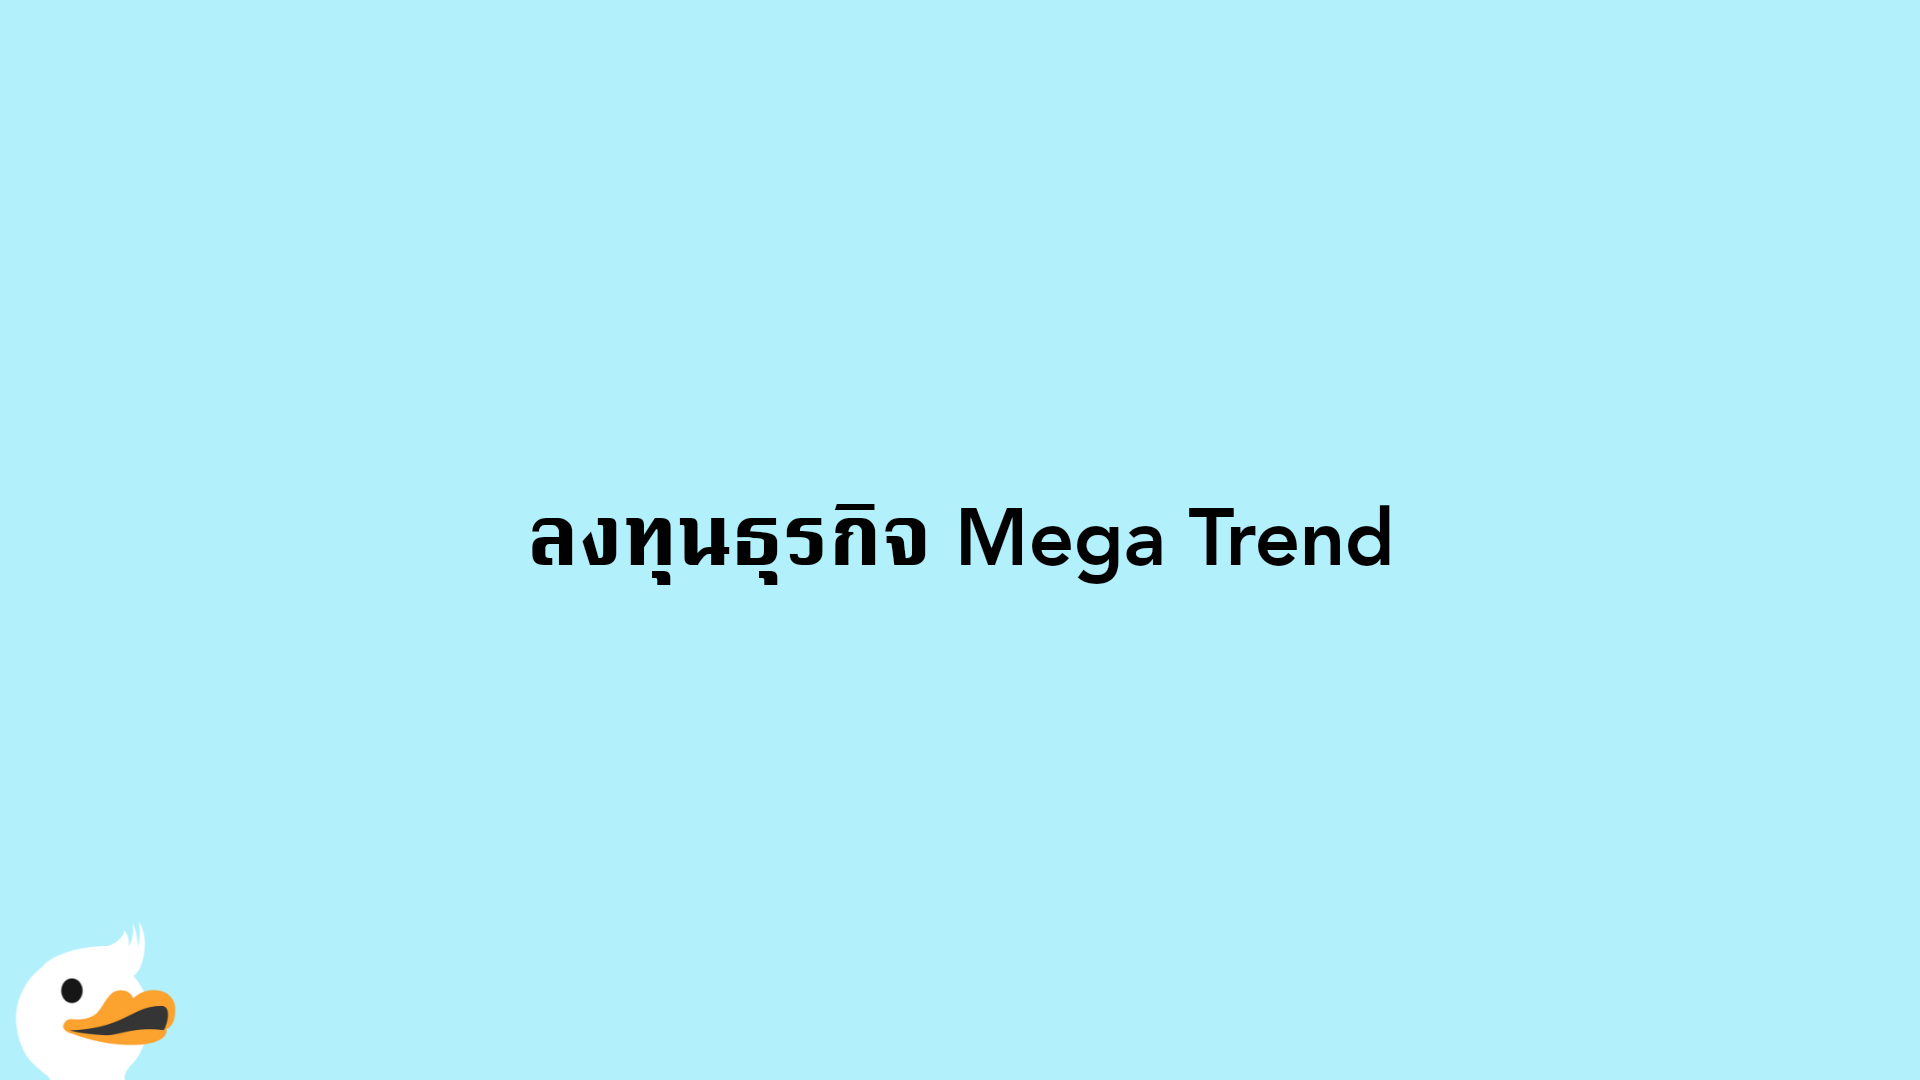 ลงทุนธุรกิจ Mega Trend